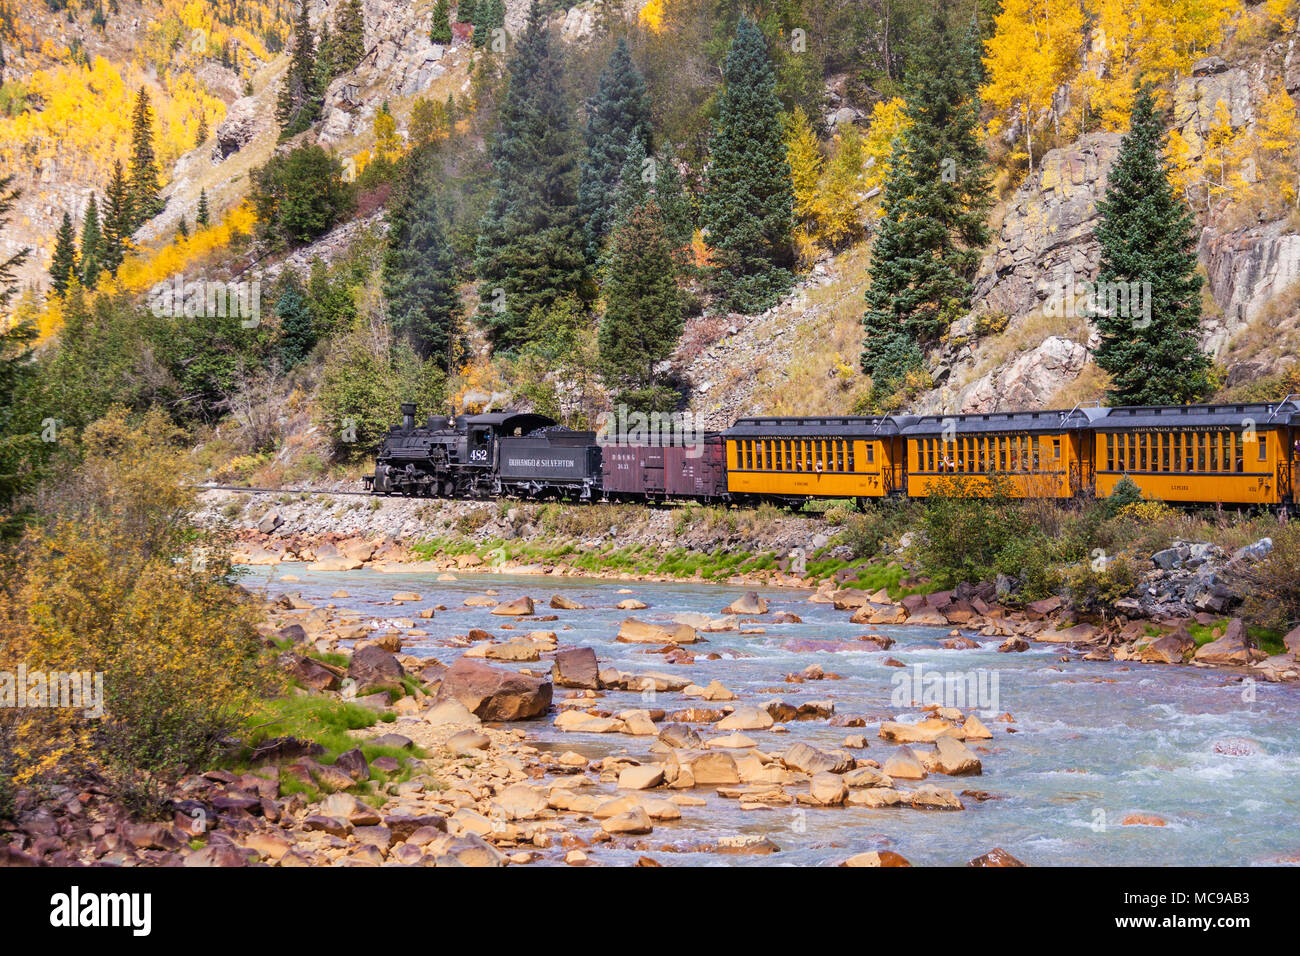 Durango and Silverton Narrow Gauge Railroad historic scenic train ride from Durango to Silverton in Colorado. Stock Photo